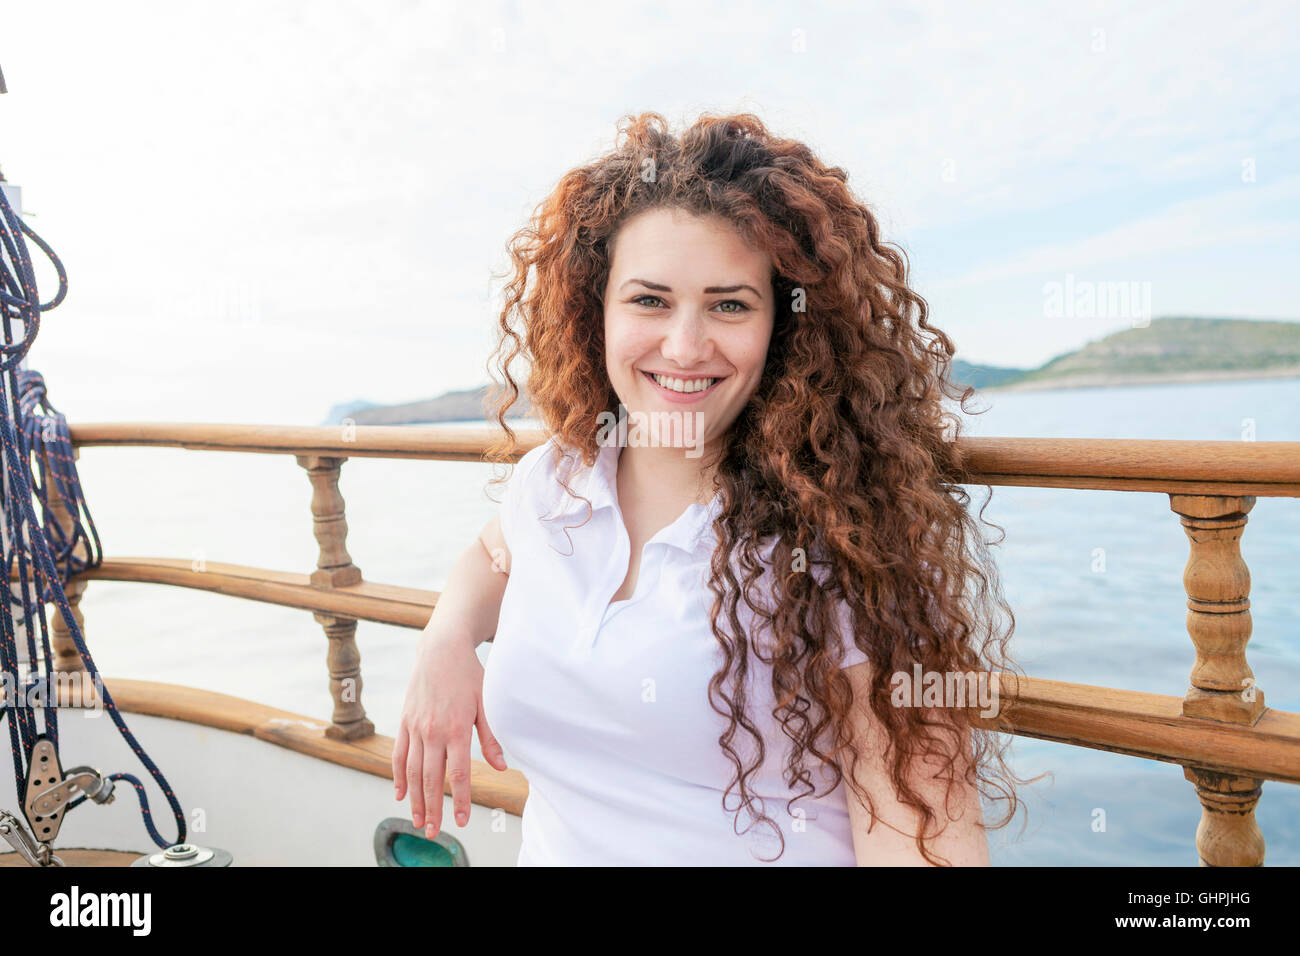 Ritratto di bella donna con capelli ricci sulla barca a vela Foto Stock